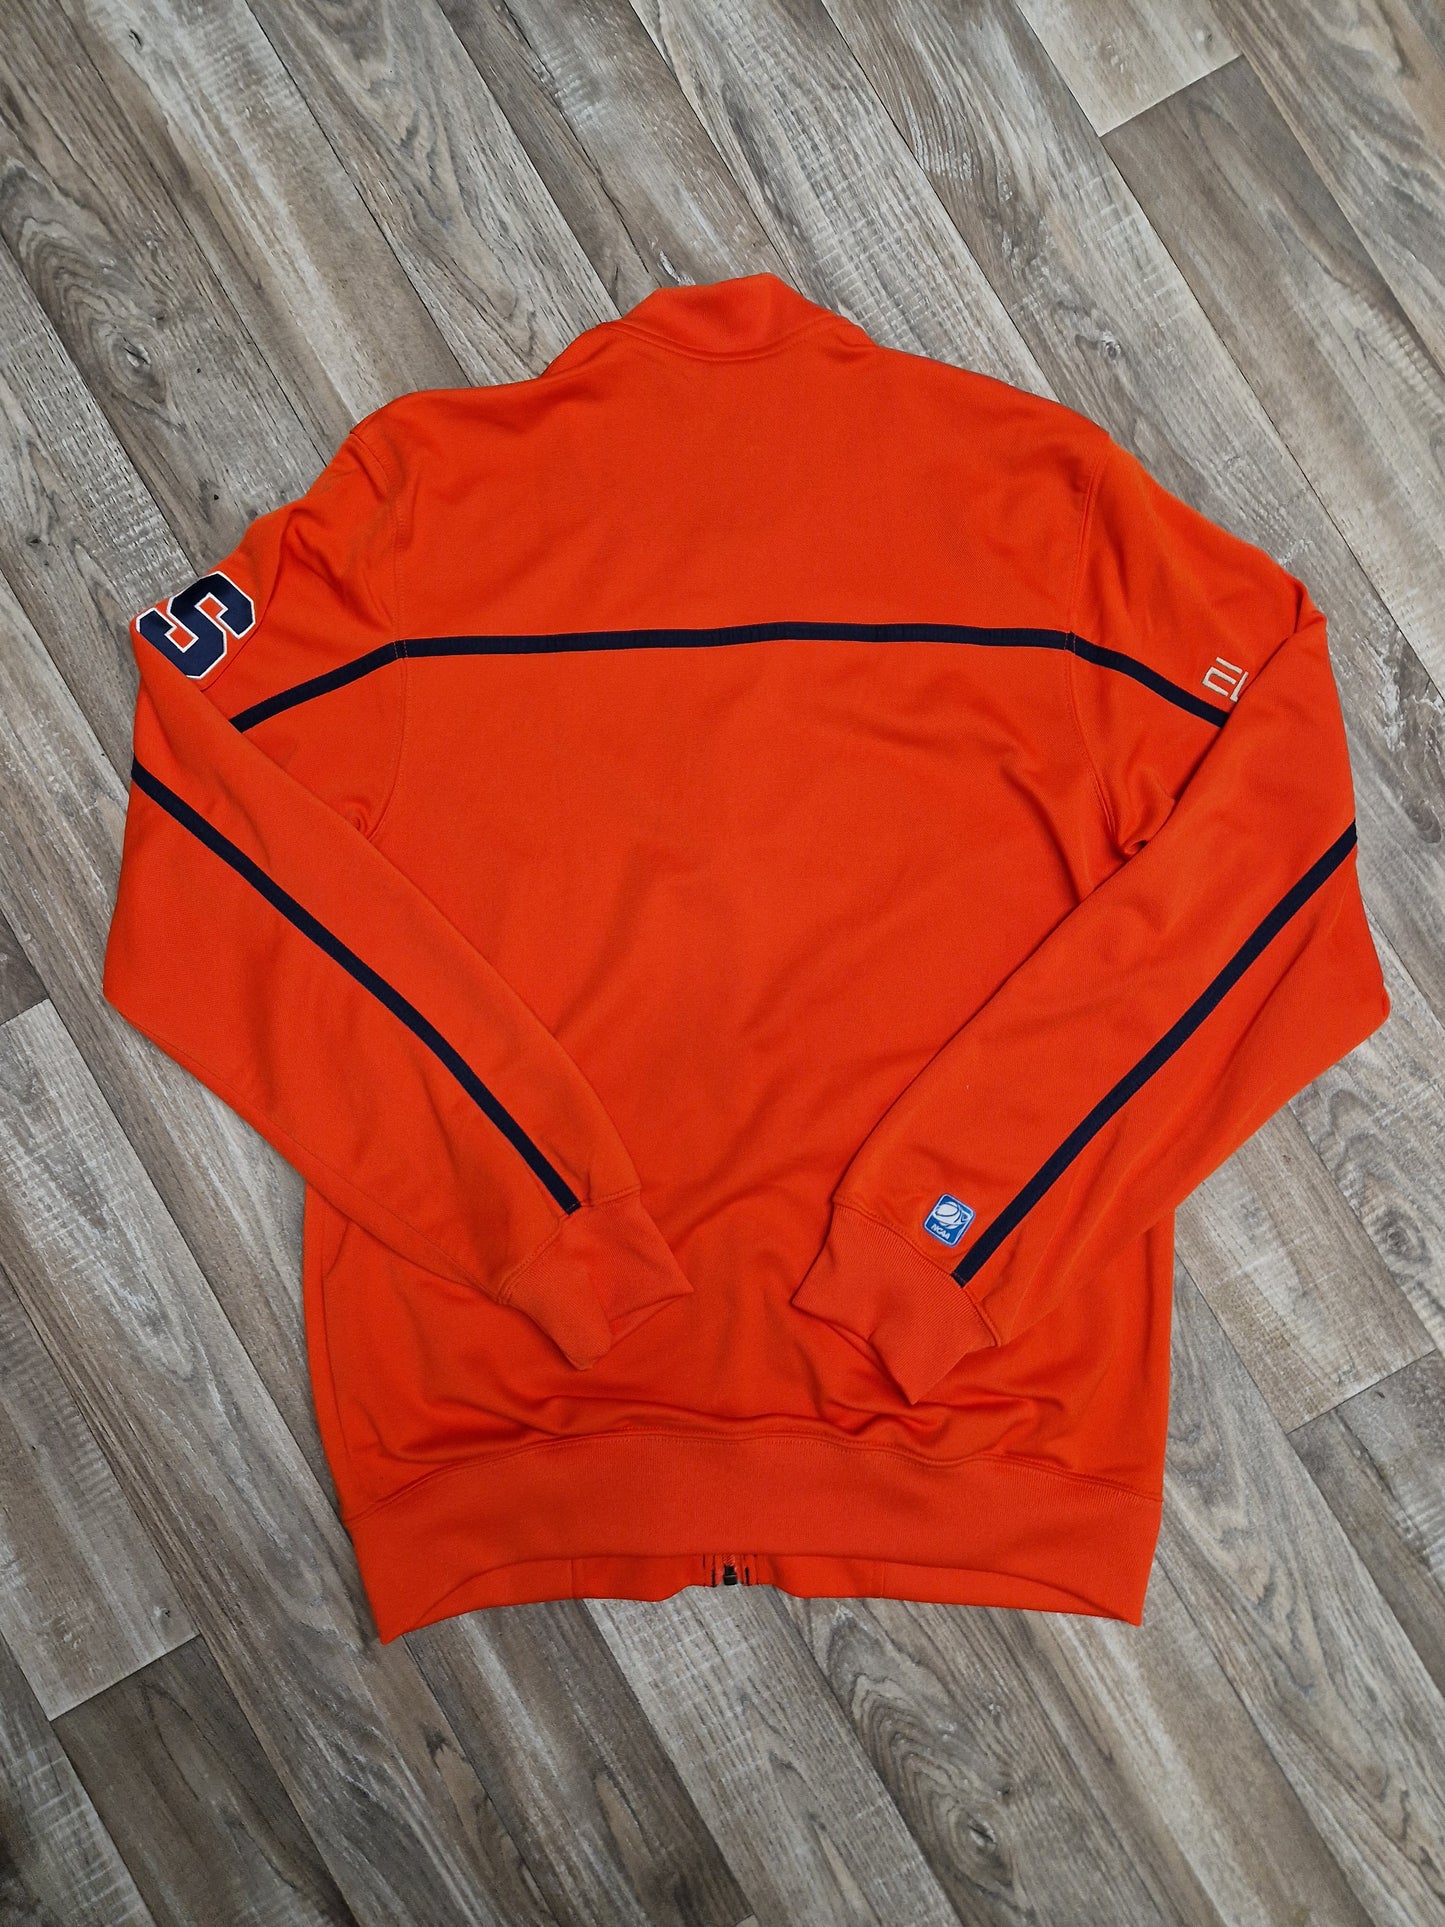 Syracuse Orangemen Jacket Size Medium